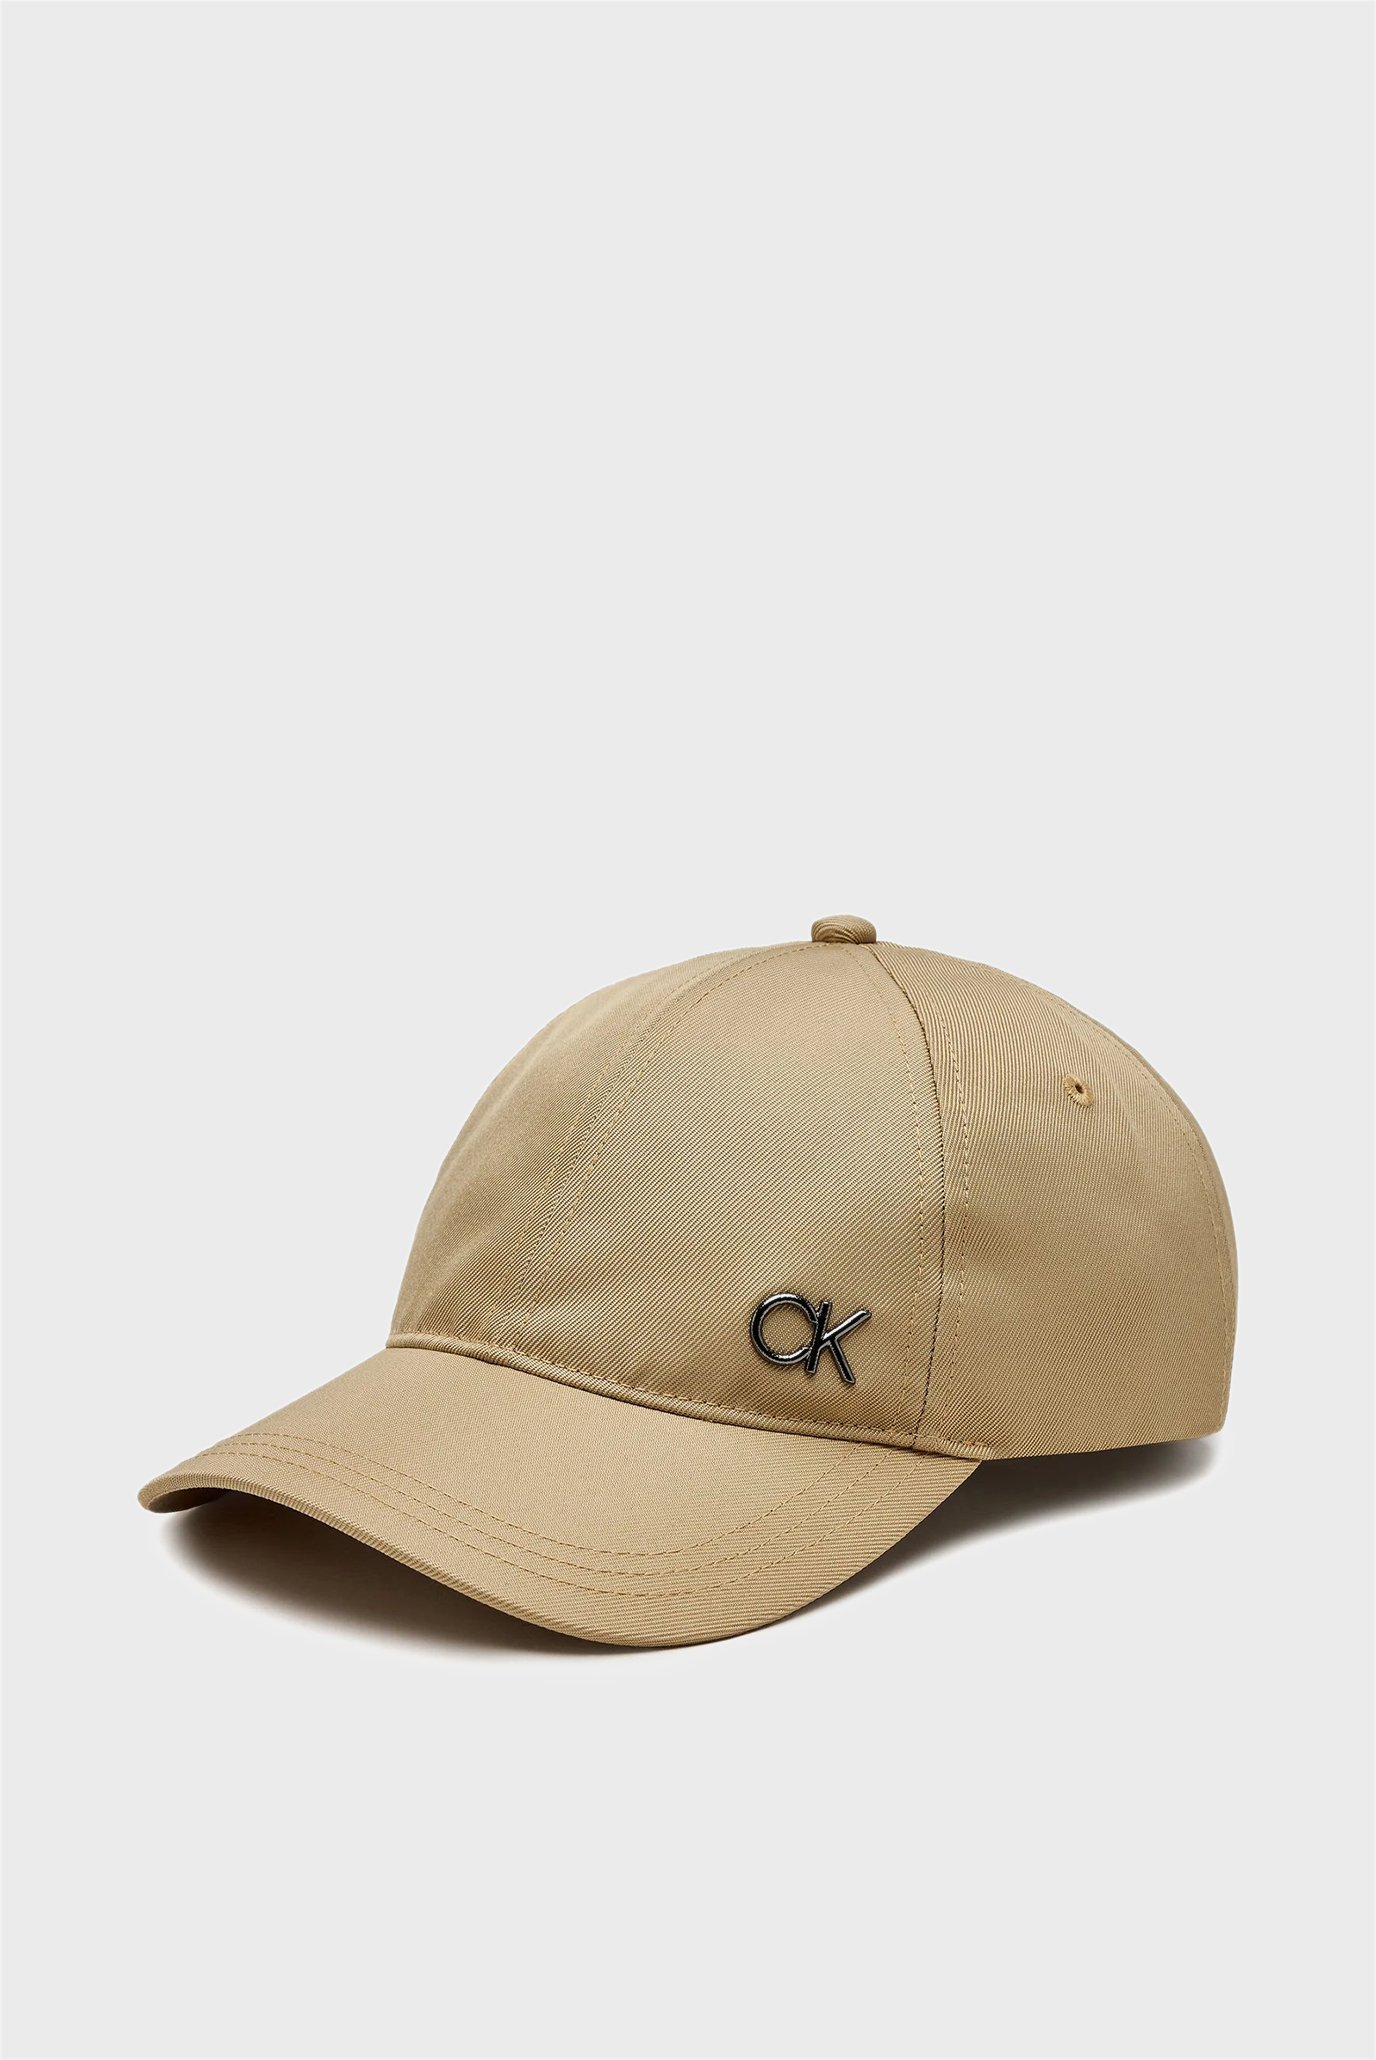 Кепка CK SAFFIANO METAL BB CAP 1